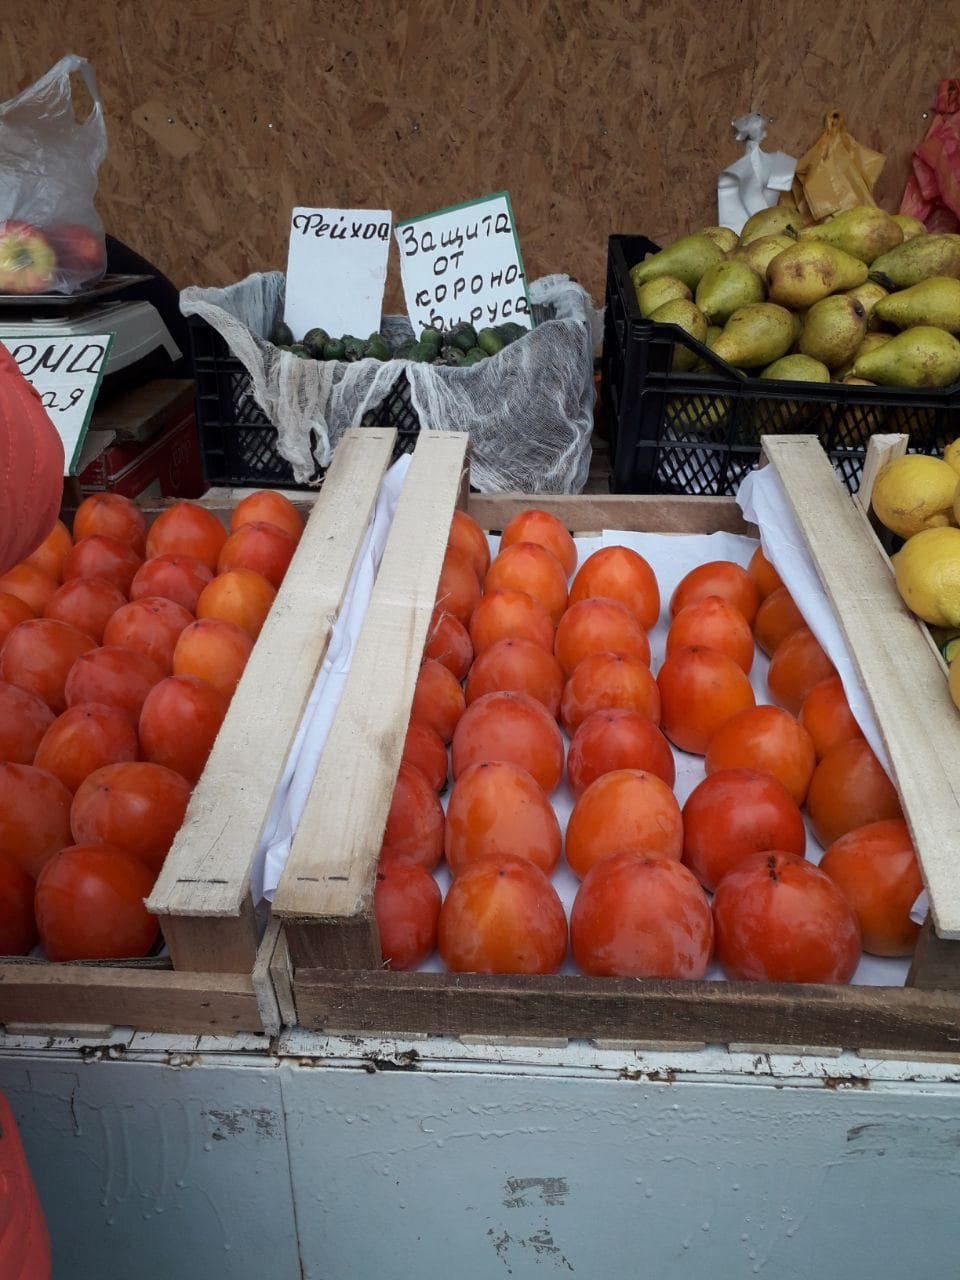 Курьёз: на запорожском рынке продают «защиту от коронавируса» (ФОТО)